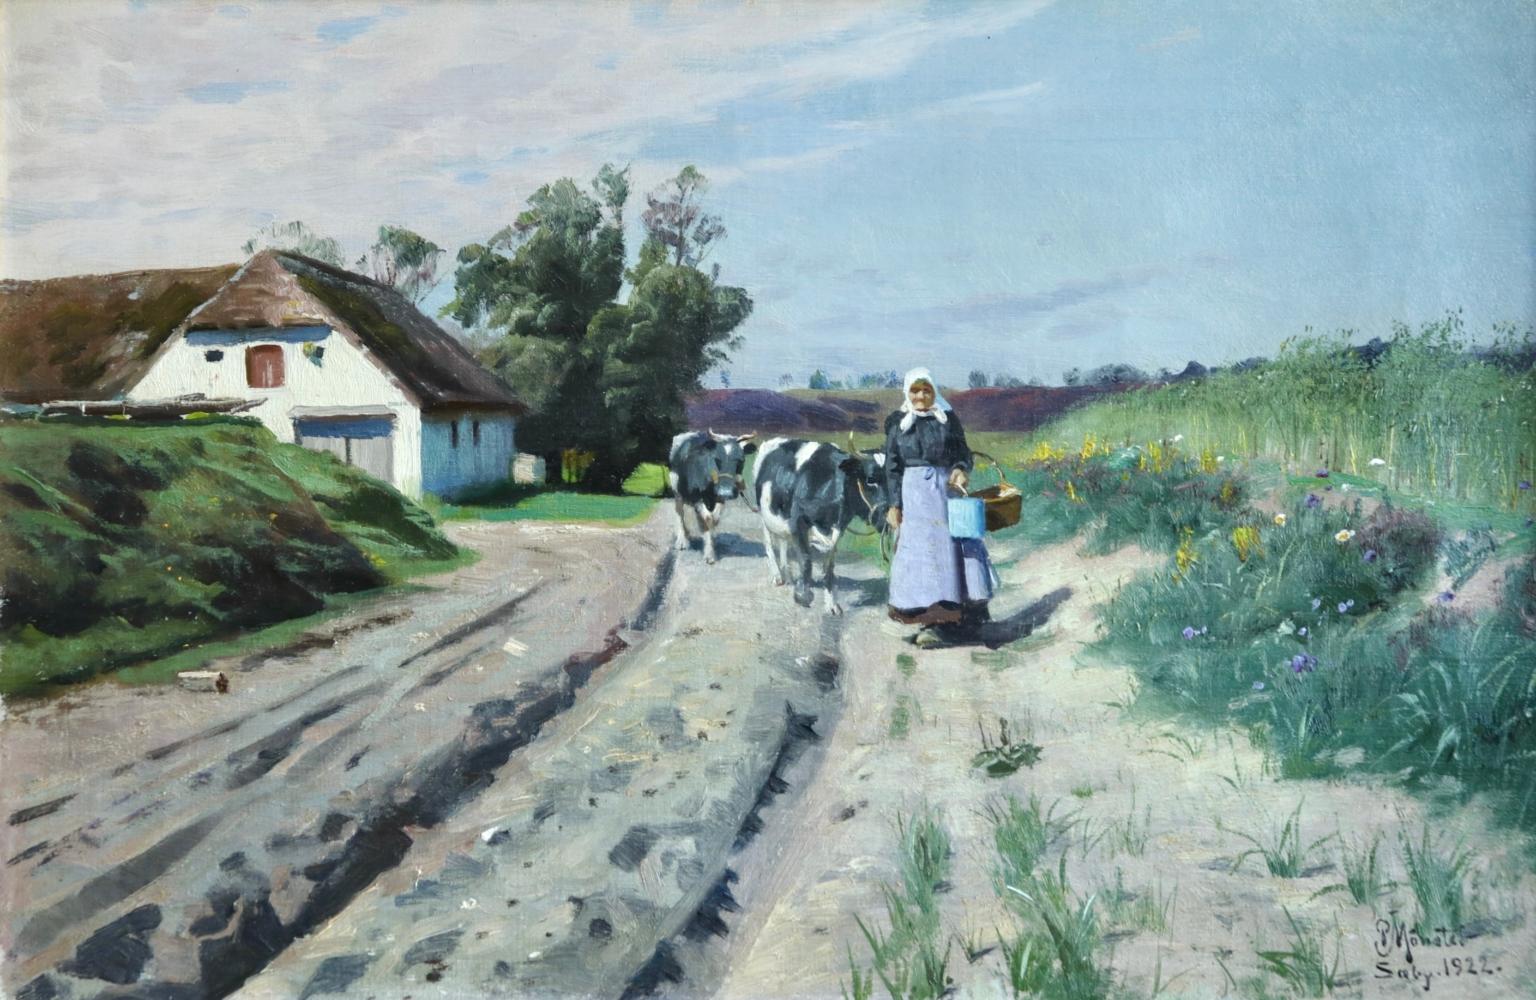 Peder Mørk Mønsted Animal Painting - Milking Time-Saeby, Jutland - Realist Oil, Cattle in Summer Landscape by Mønsted